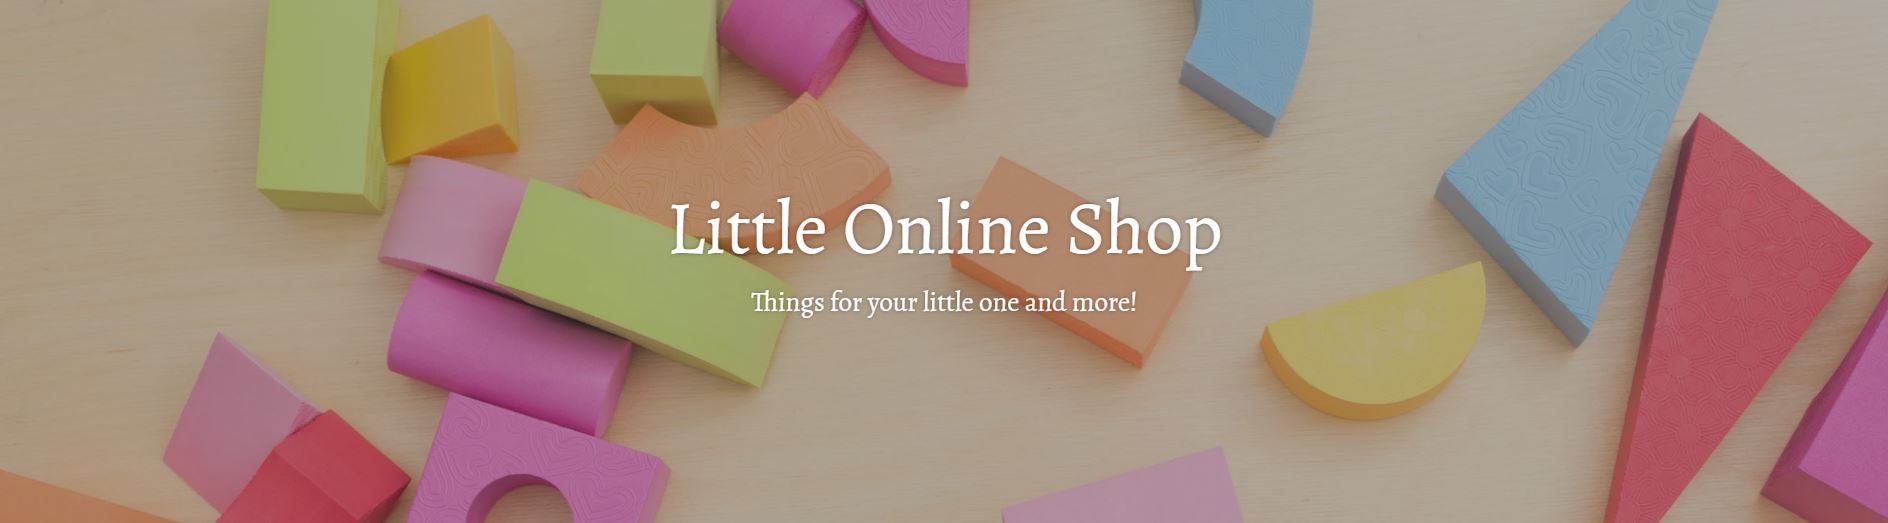 Little Online Shop